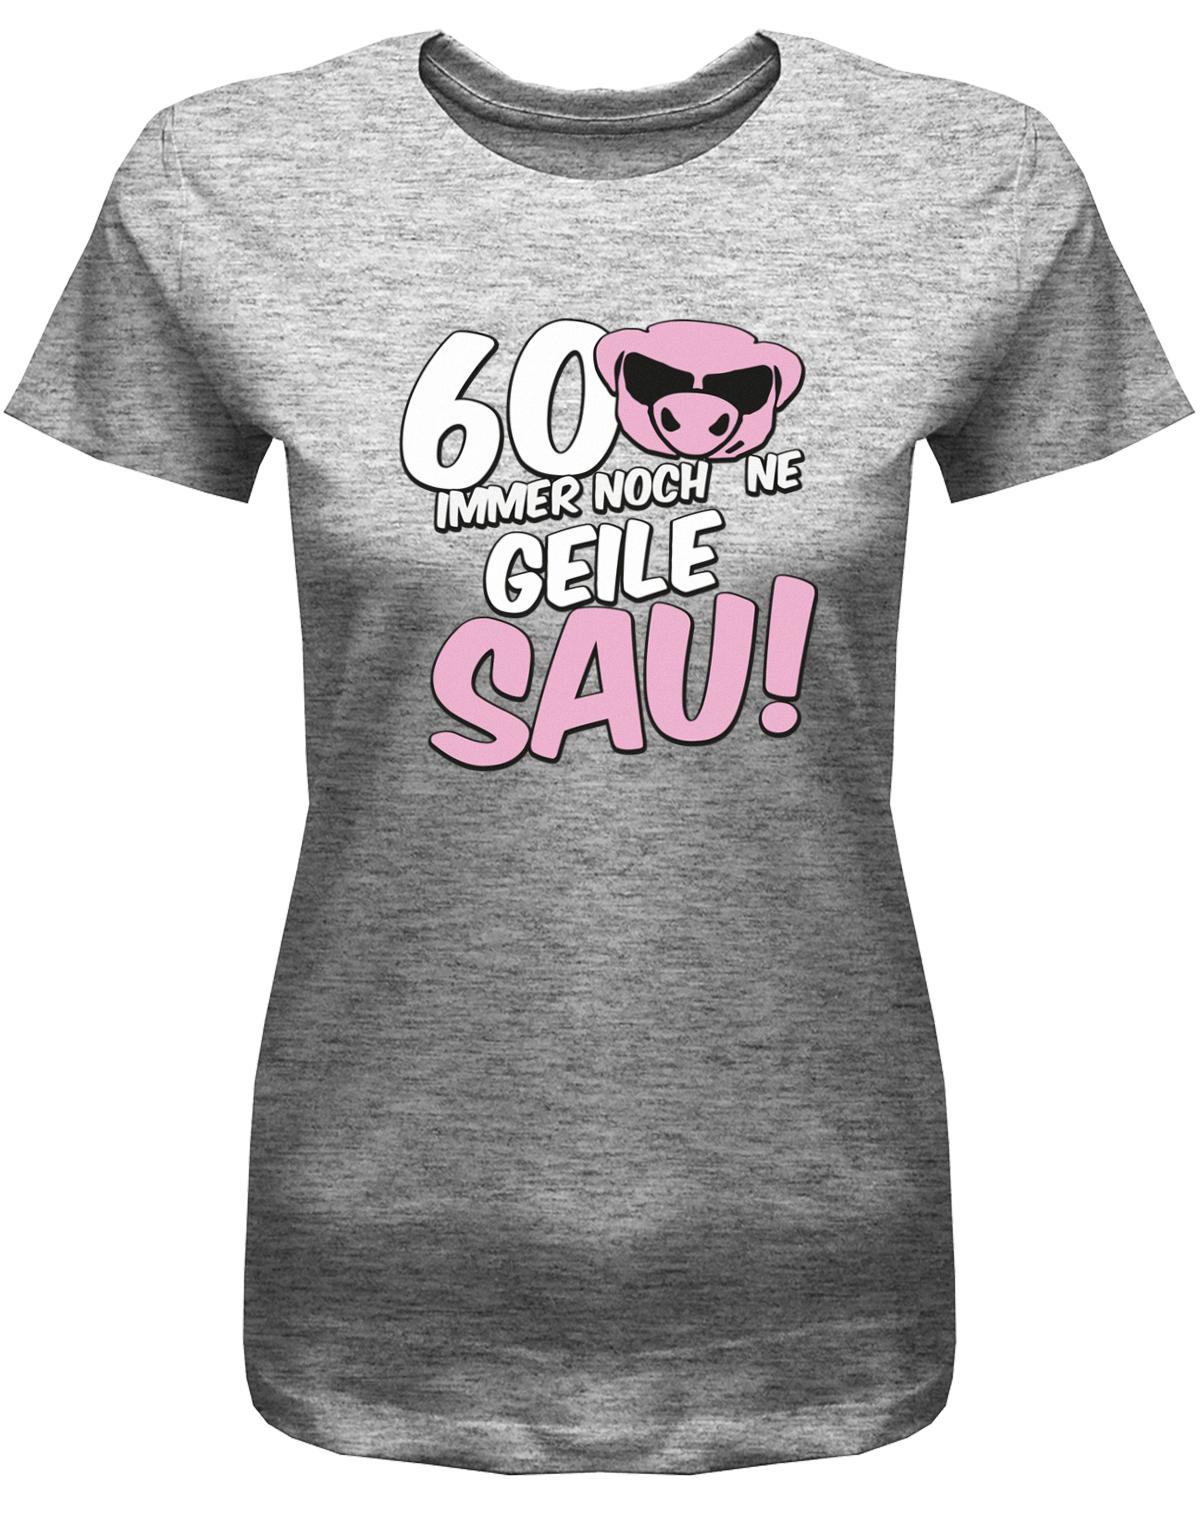 Lustiges T-Shirt zum 60 Geburtstag für die Frau Bedruckt mit 60 Immer noch 'ne geile Sau! Sau mit Sonnenbrille Grau